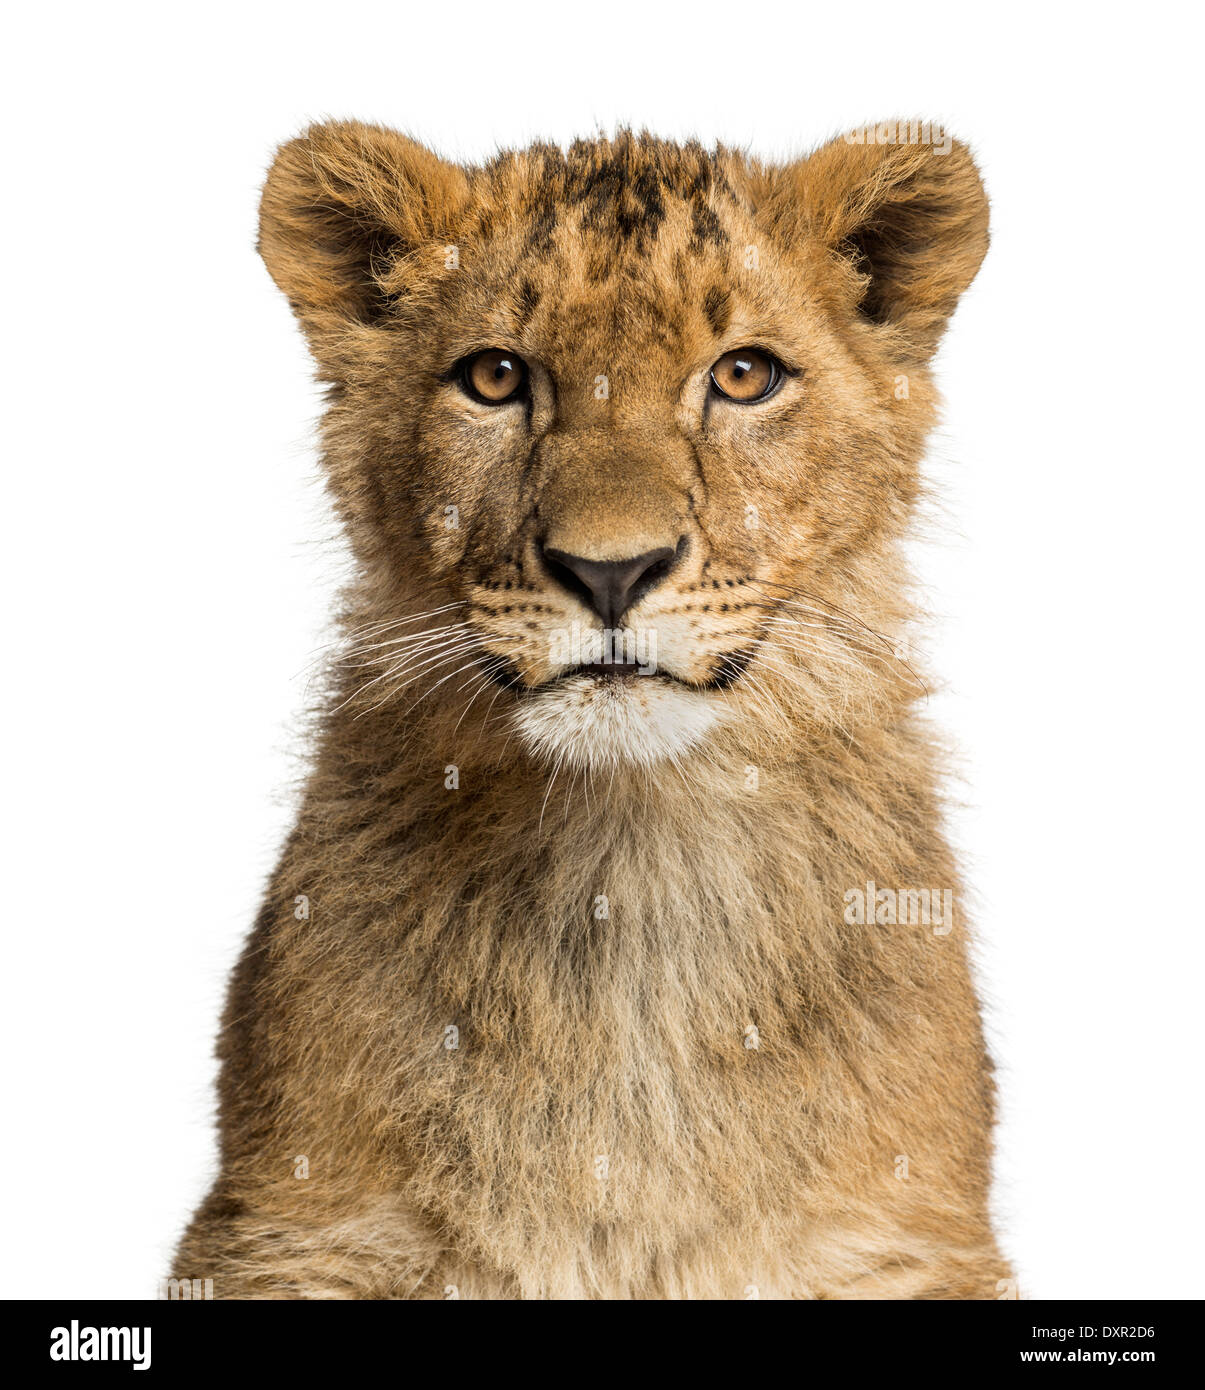 Close-up de un cachorro de león mirando la cámara contra el fondo blanco. Foto de stock